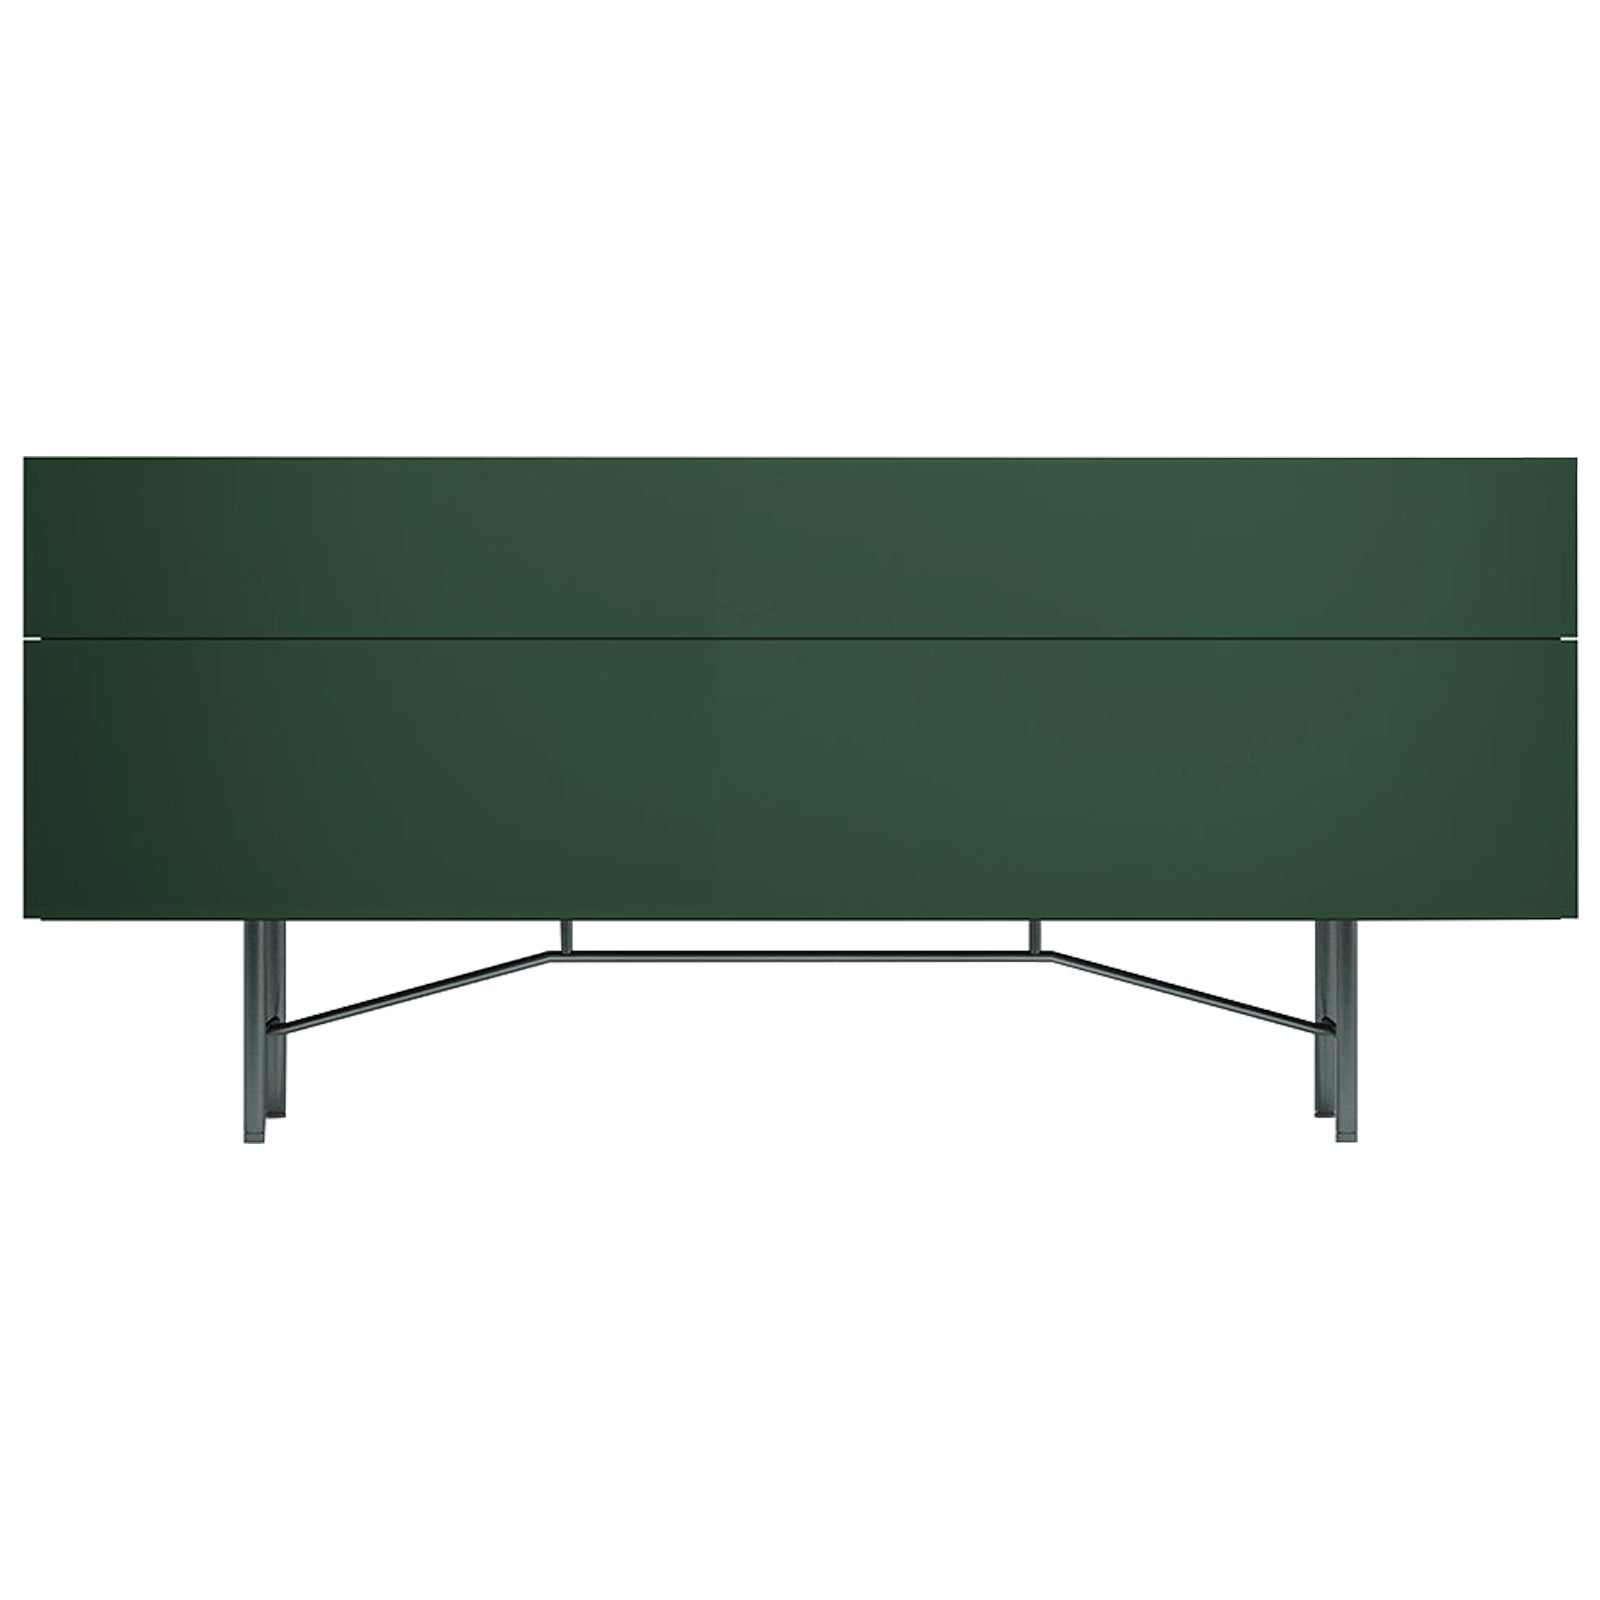 Acerbis Großes Grand Buffet Sideboard in glänzendem lackiertem dunkelgrünem und grauem Rahmen